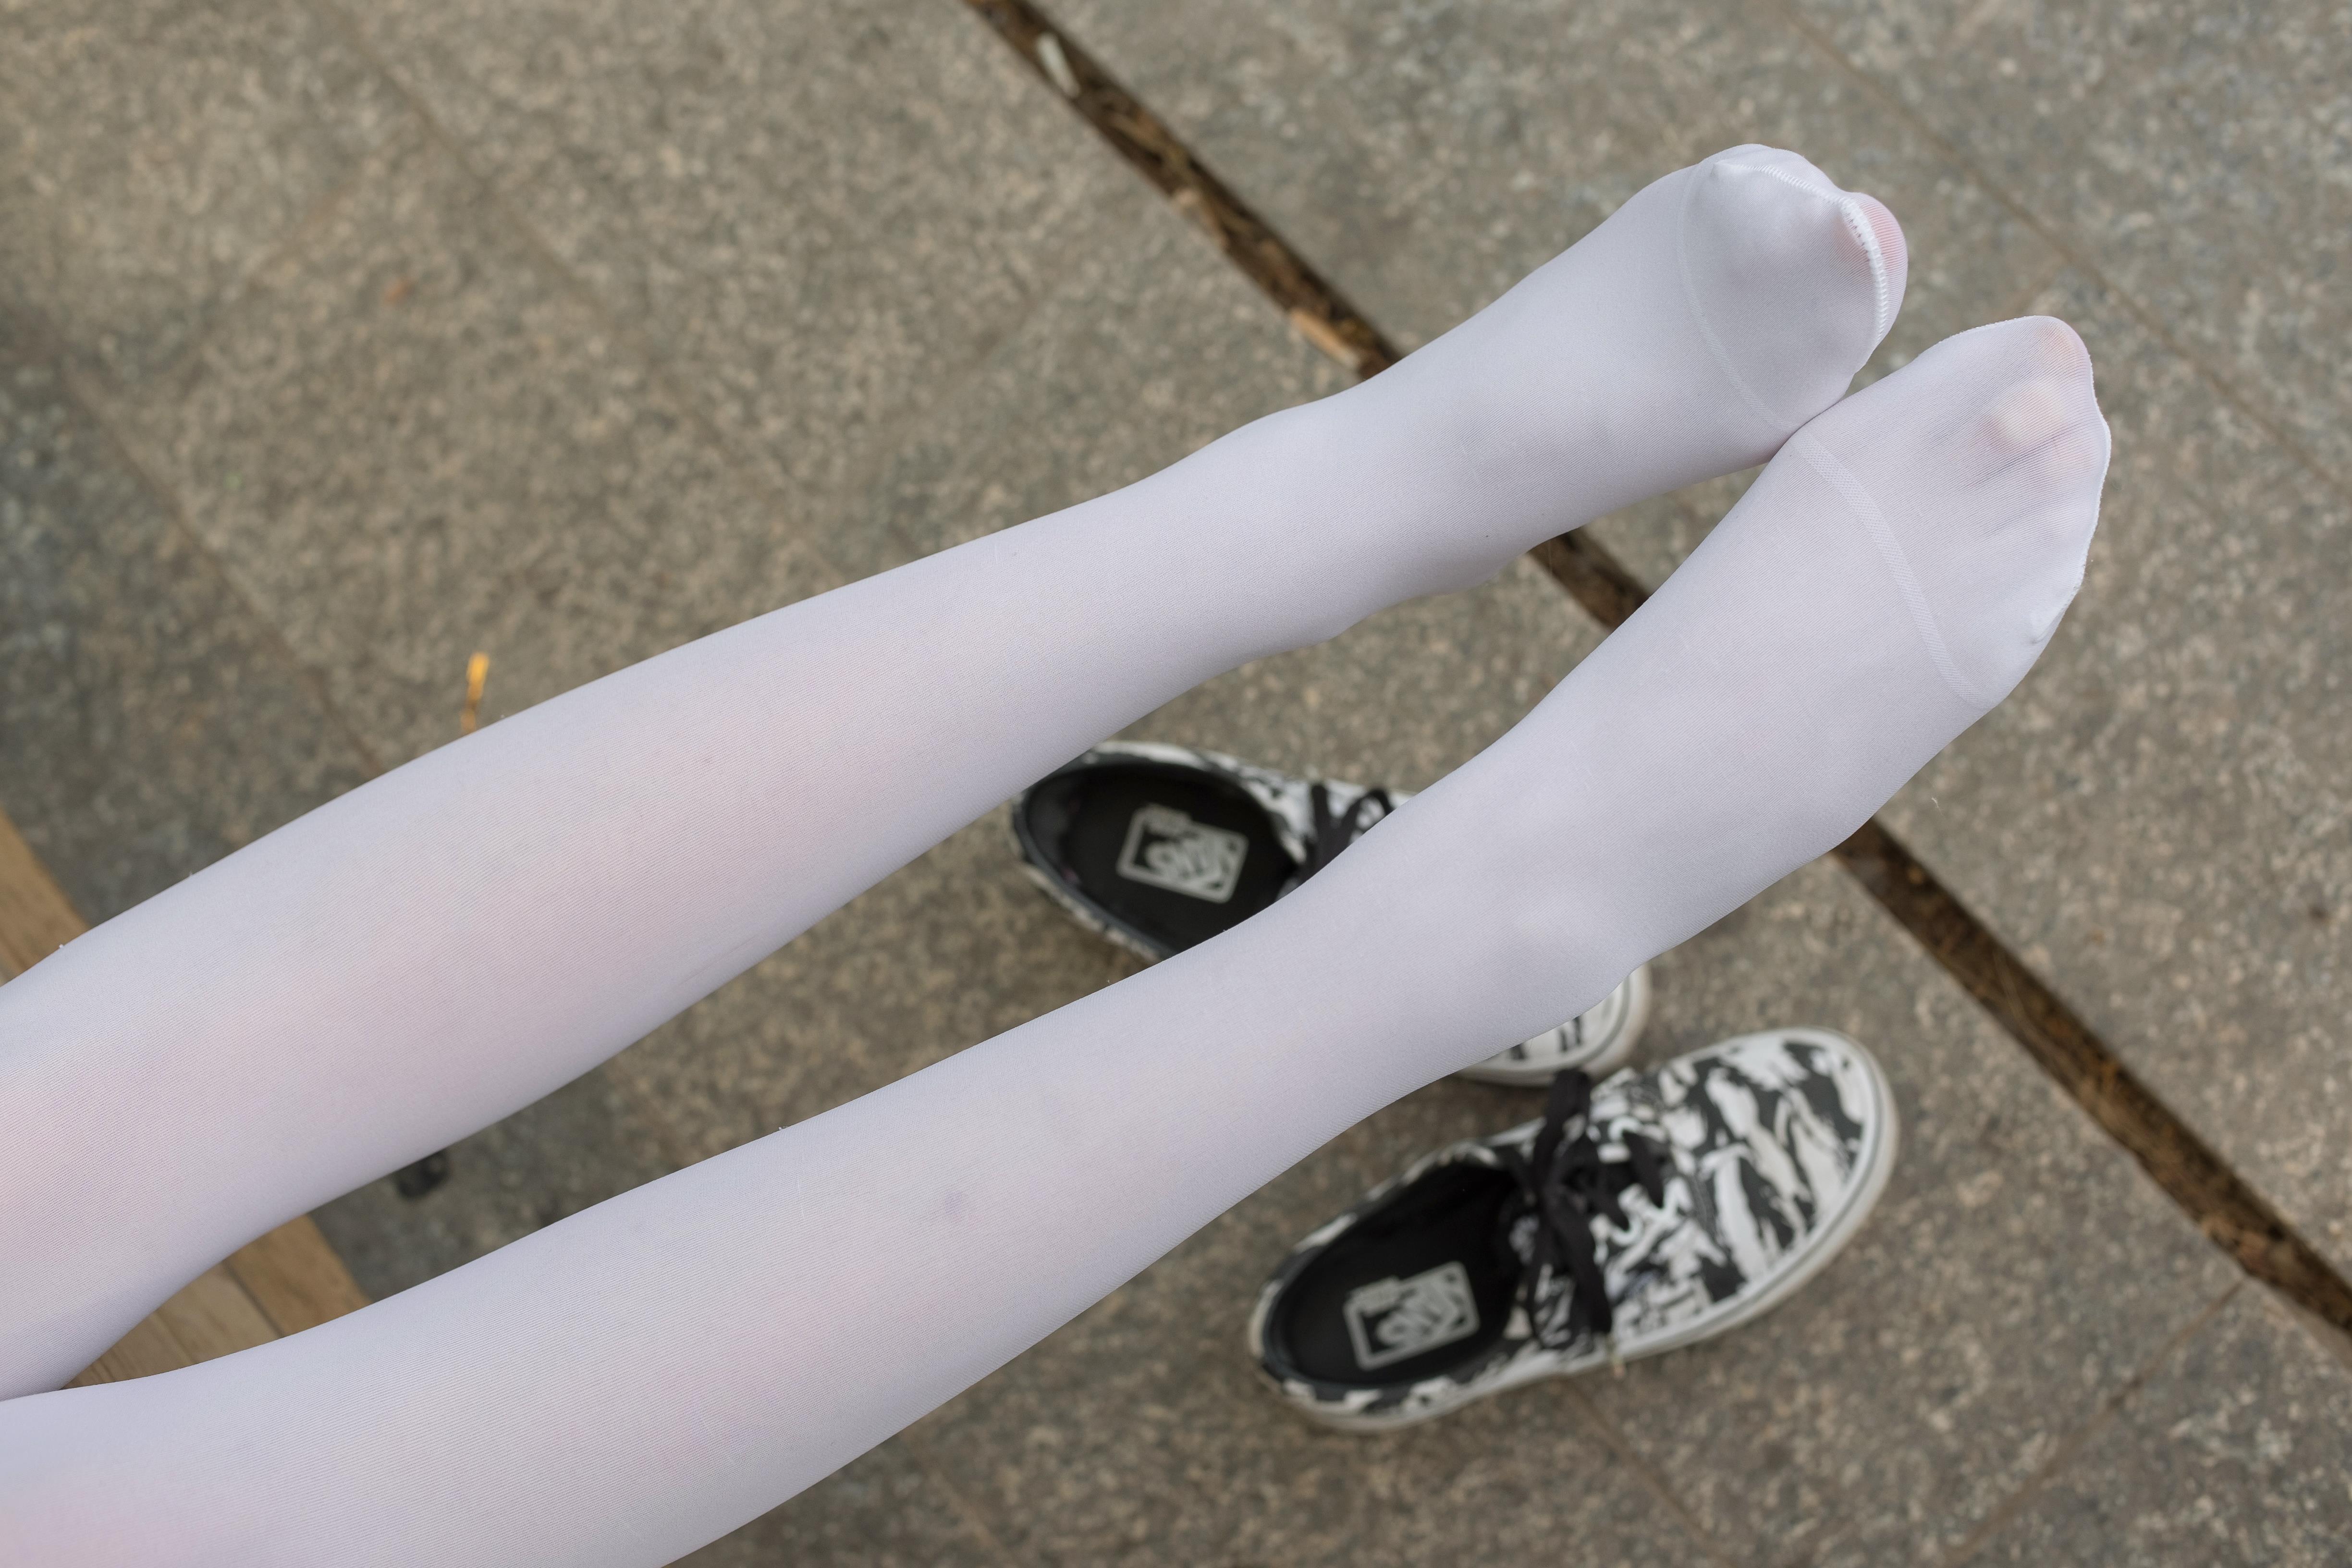 [森萝财团]萝莉R15-014 白色短袖与灰色短裤加白色丝袜美腿玉足公园内性感私房写真集,